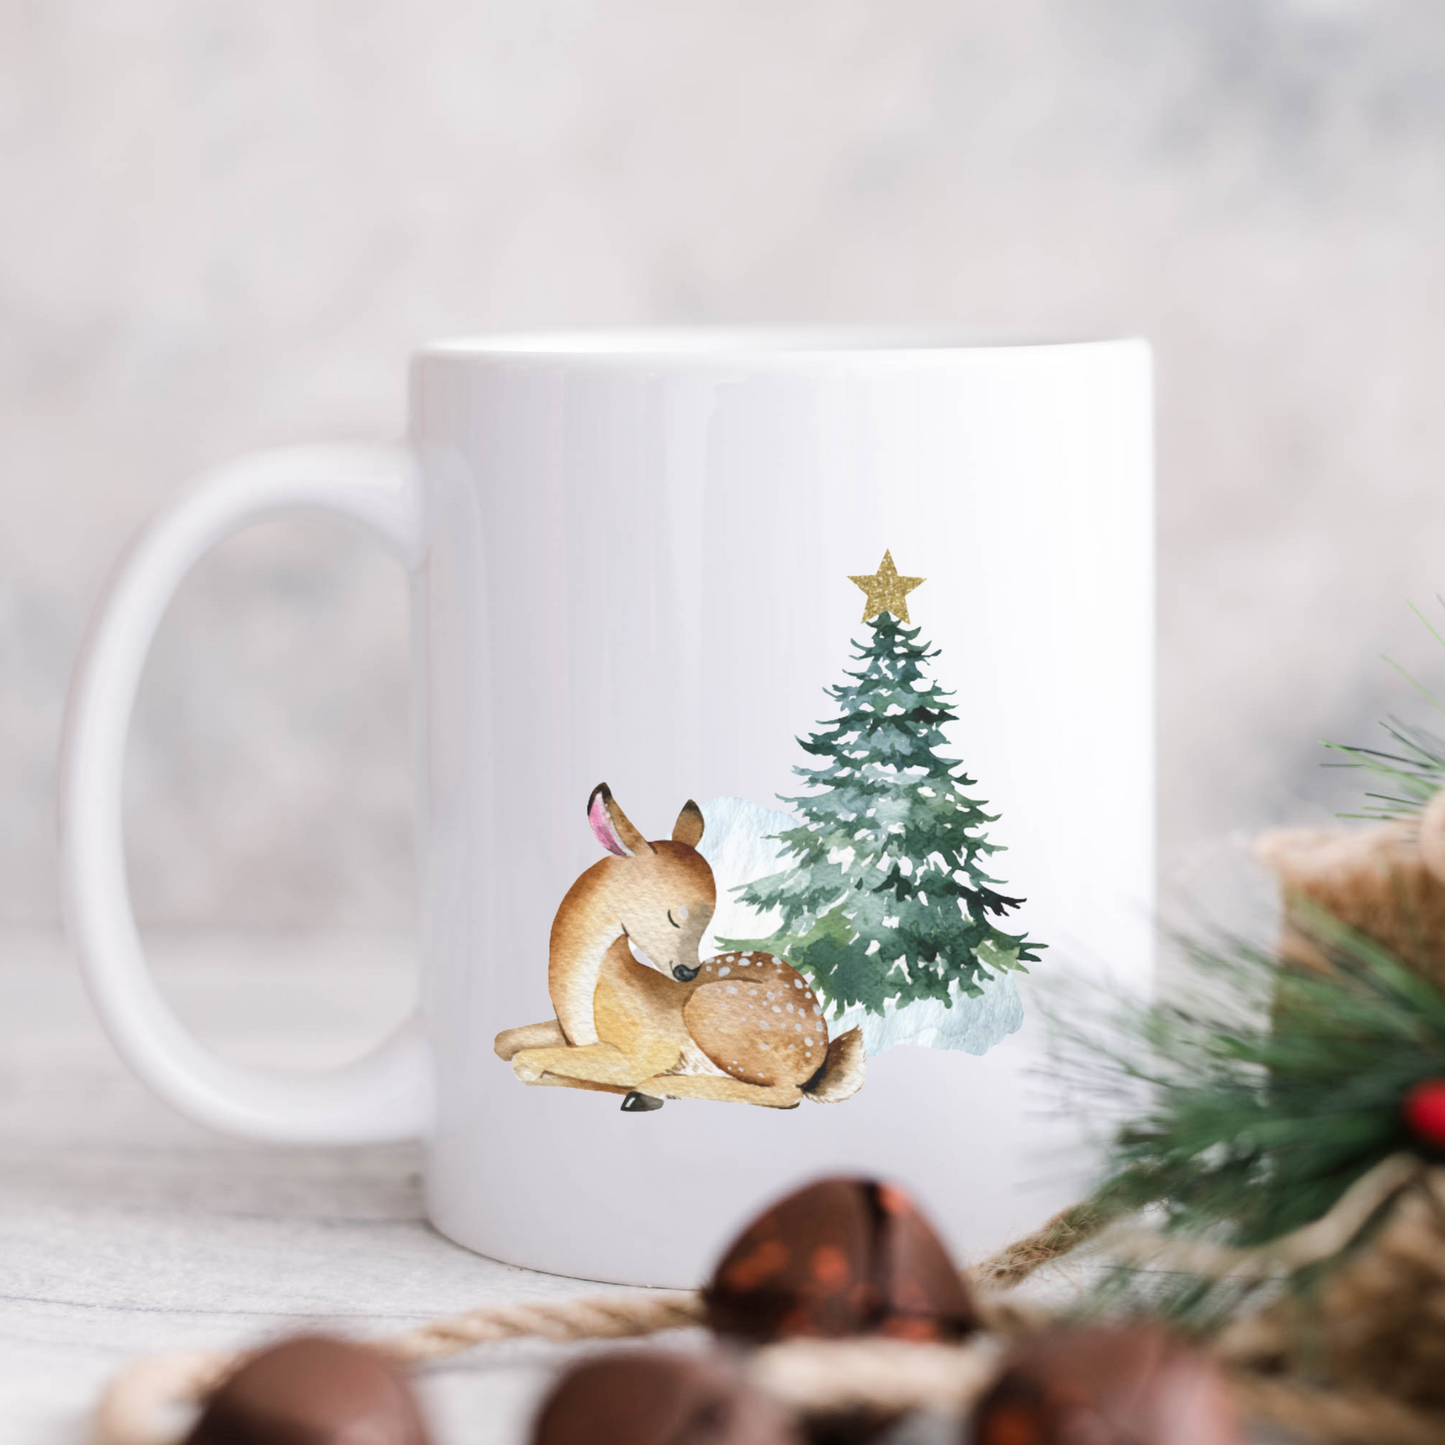 Keramik Tasse Weihnachten - personalisiert mit Namen - Schneelandschaft - Wichtelgeschenk - Christmas Mug - Design Wald